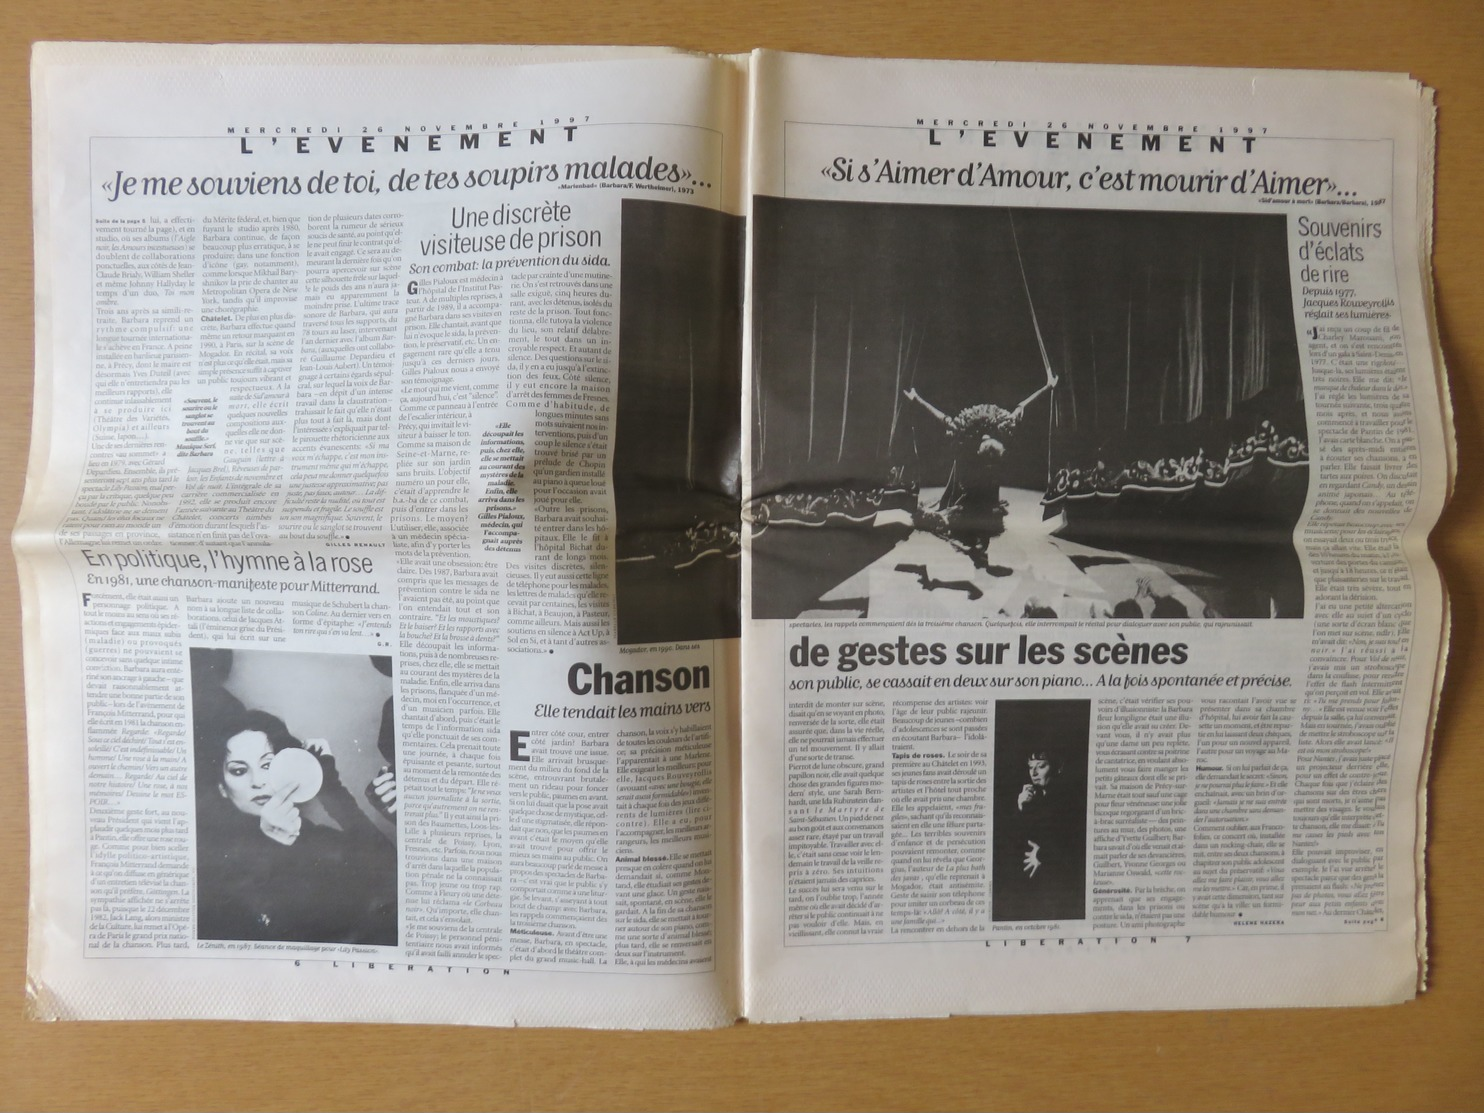 Journal Libération Mercredi 26 Novembre 1997 - Ma Plus Belle Histoire D'amour, C'est Vous... Barbara Est Morte Lundi Soi - 1950 - Today